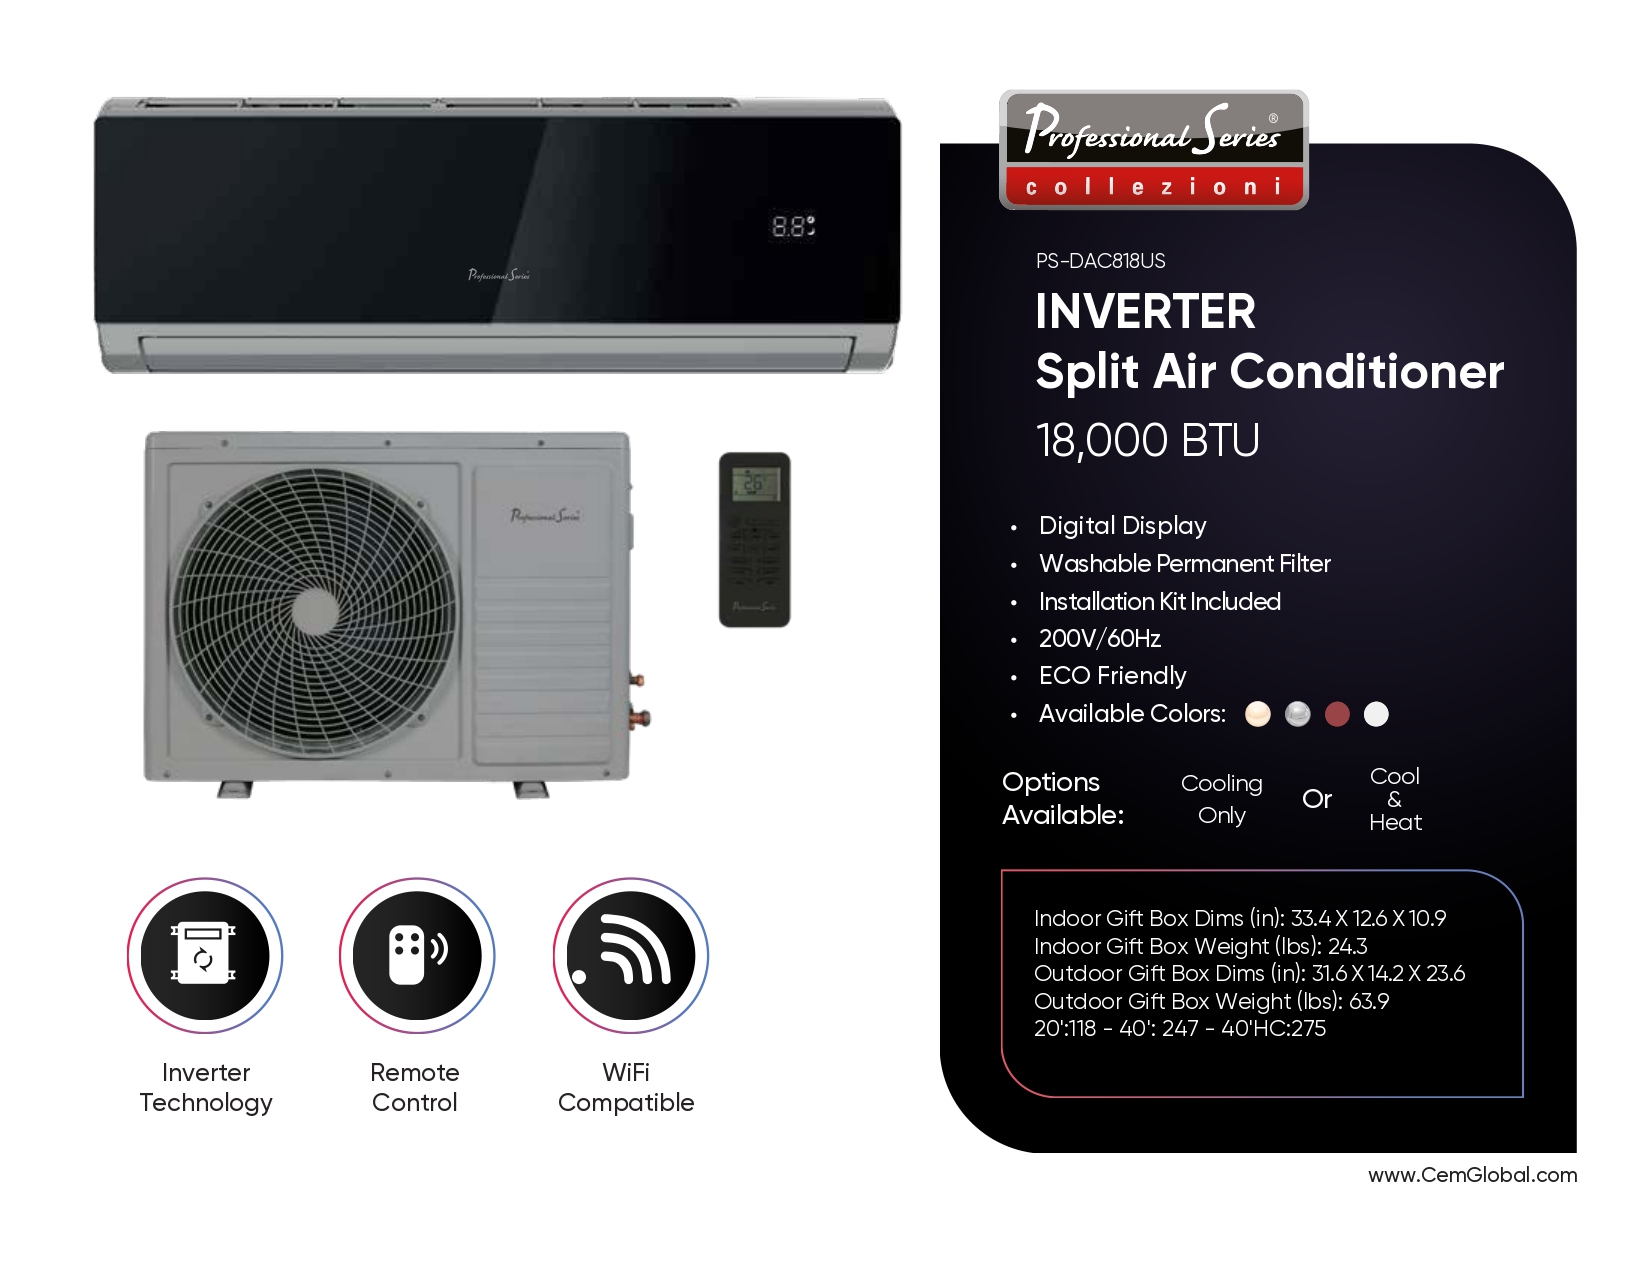 INVERTER Split Air Conditioner 18,000 BTU